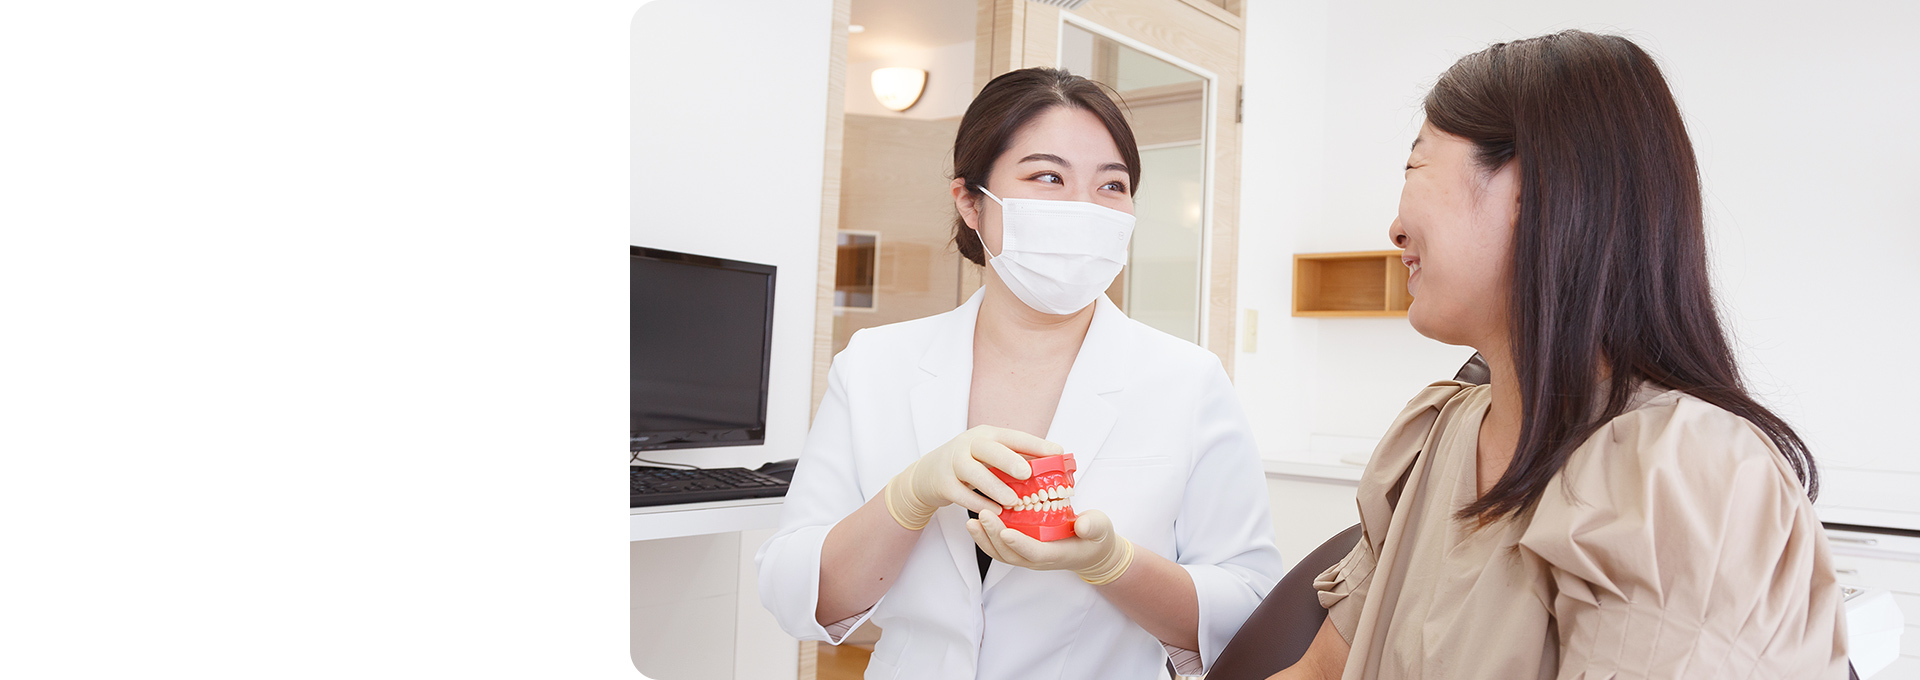 最適な歯科医療を通して、地域の皆様の笑顔をお守りします。落合南長崎駅より徒歩3分。各専門分野のドクターが在籍し、幅広い症例に対応しております。